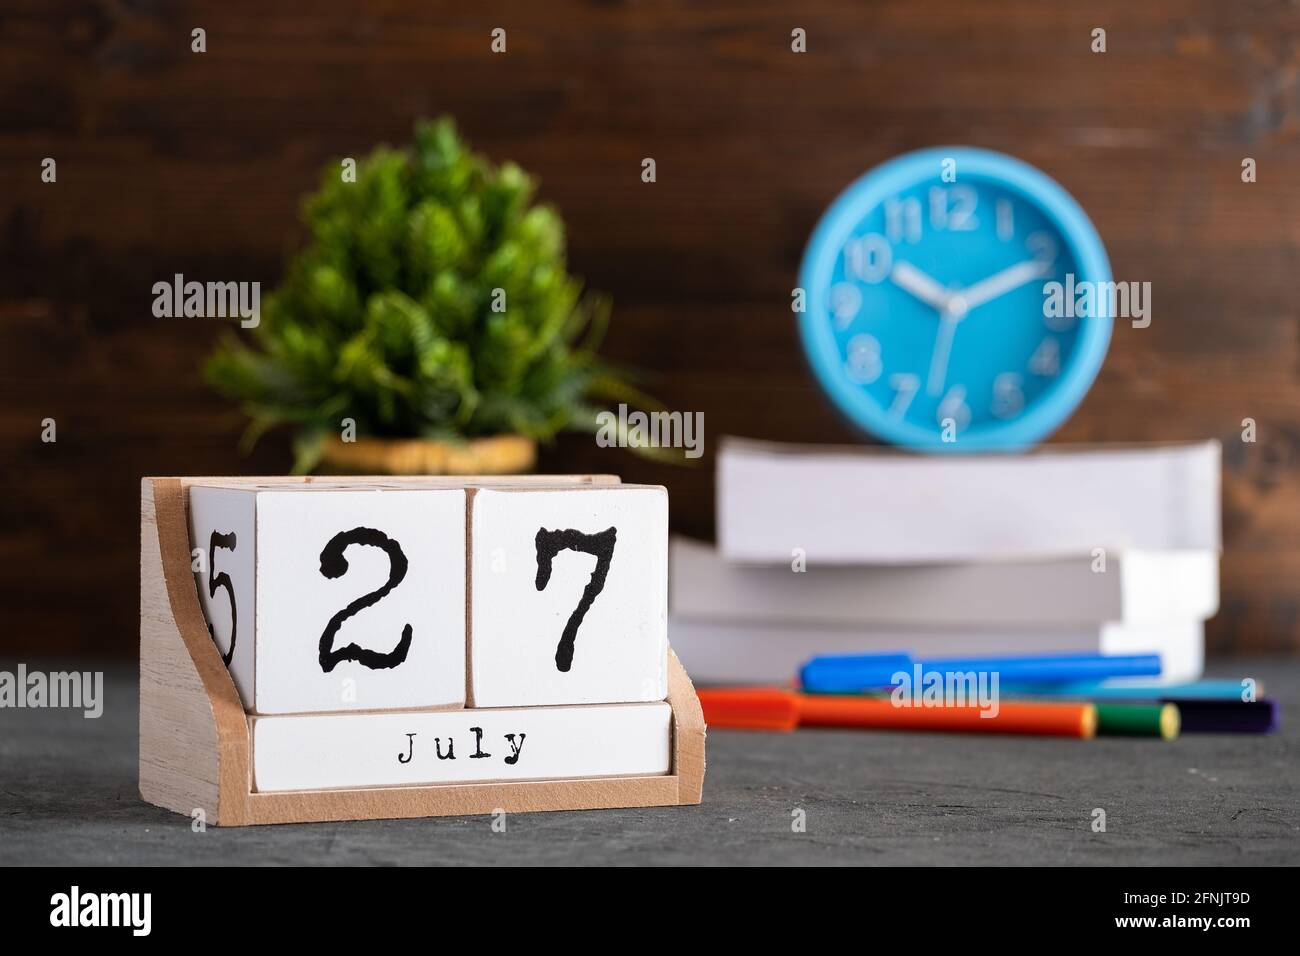 27 juillet. Juillet 27 calendrier cube en bois avec des objets flous sur fond. Banque D'Images